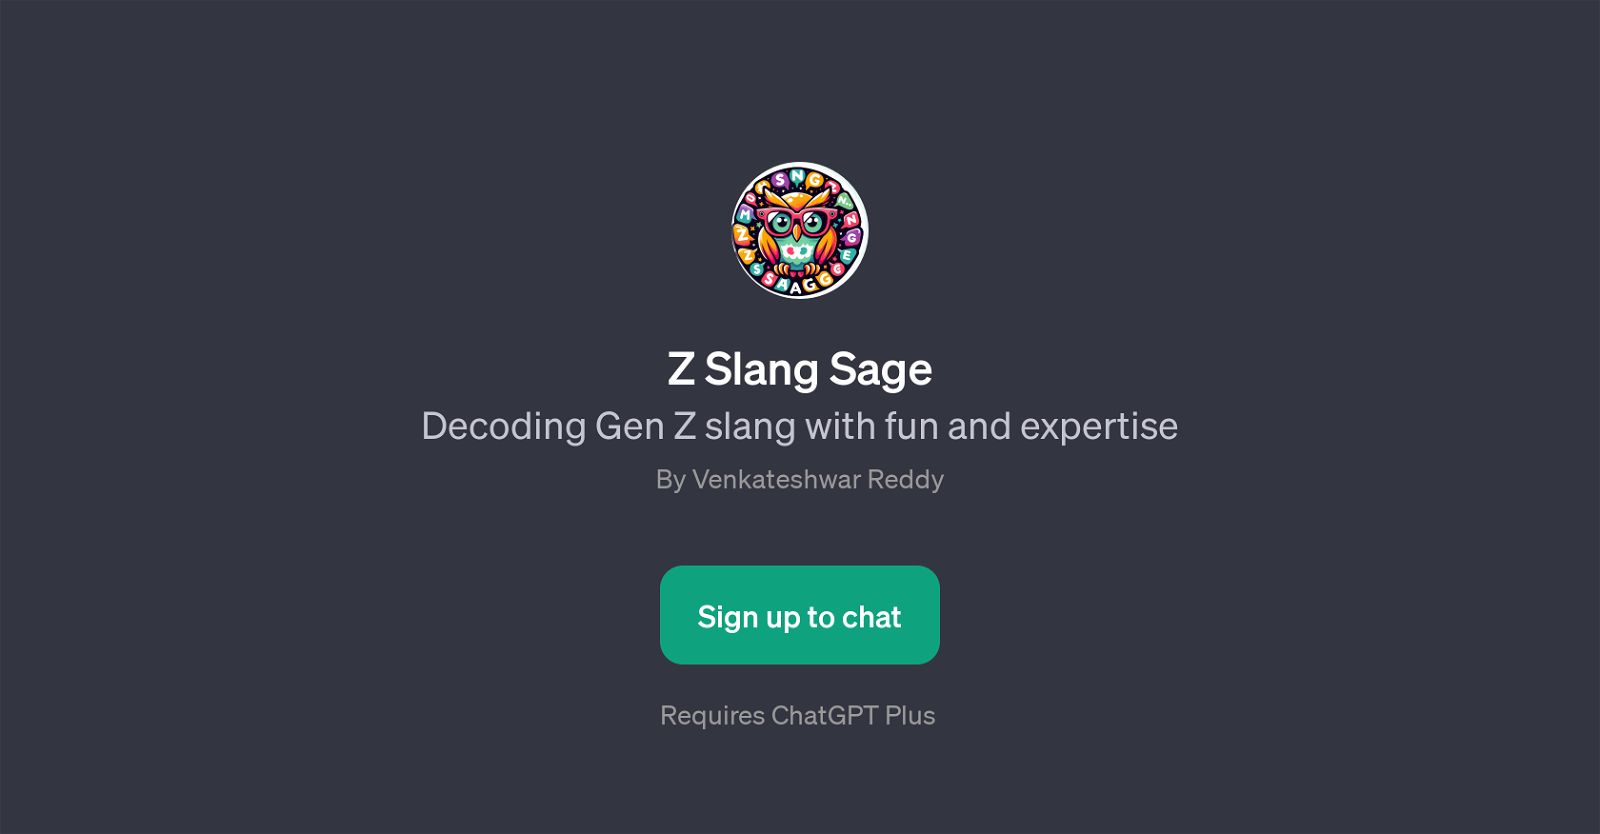 Z Slang Sage website